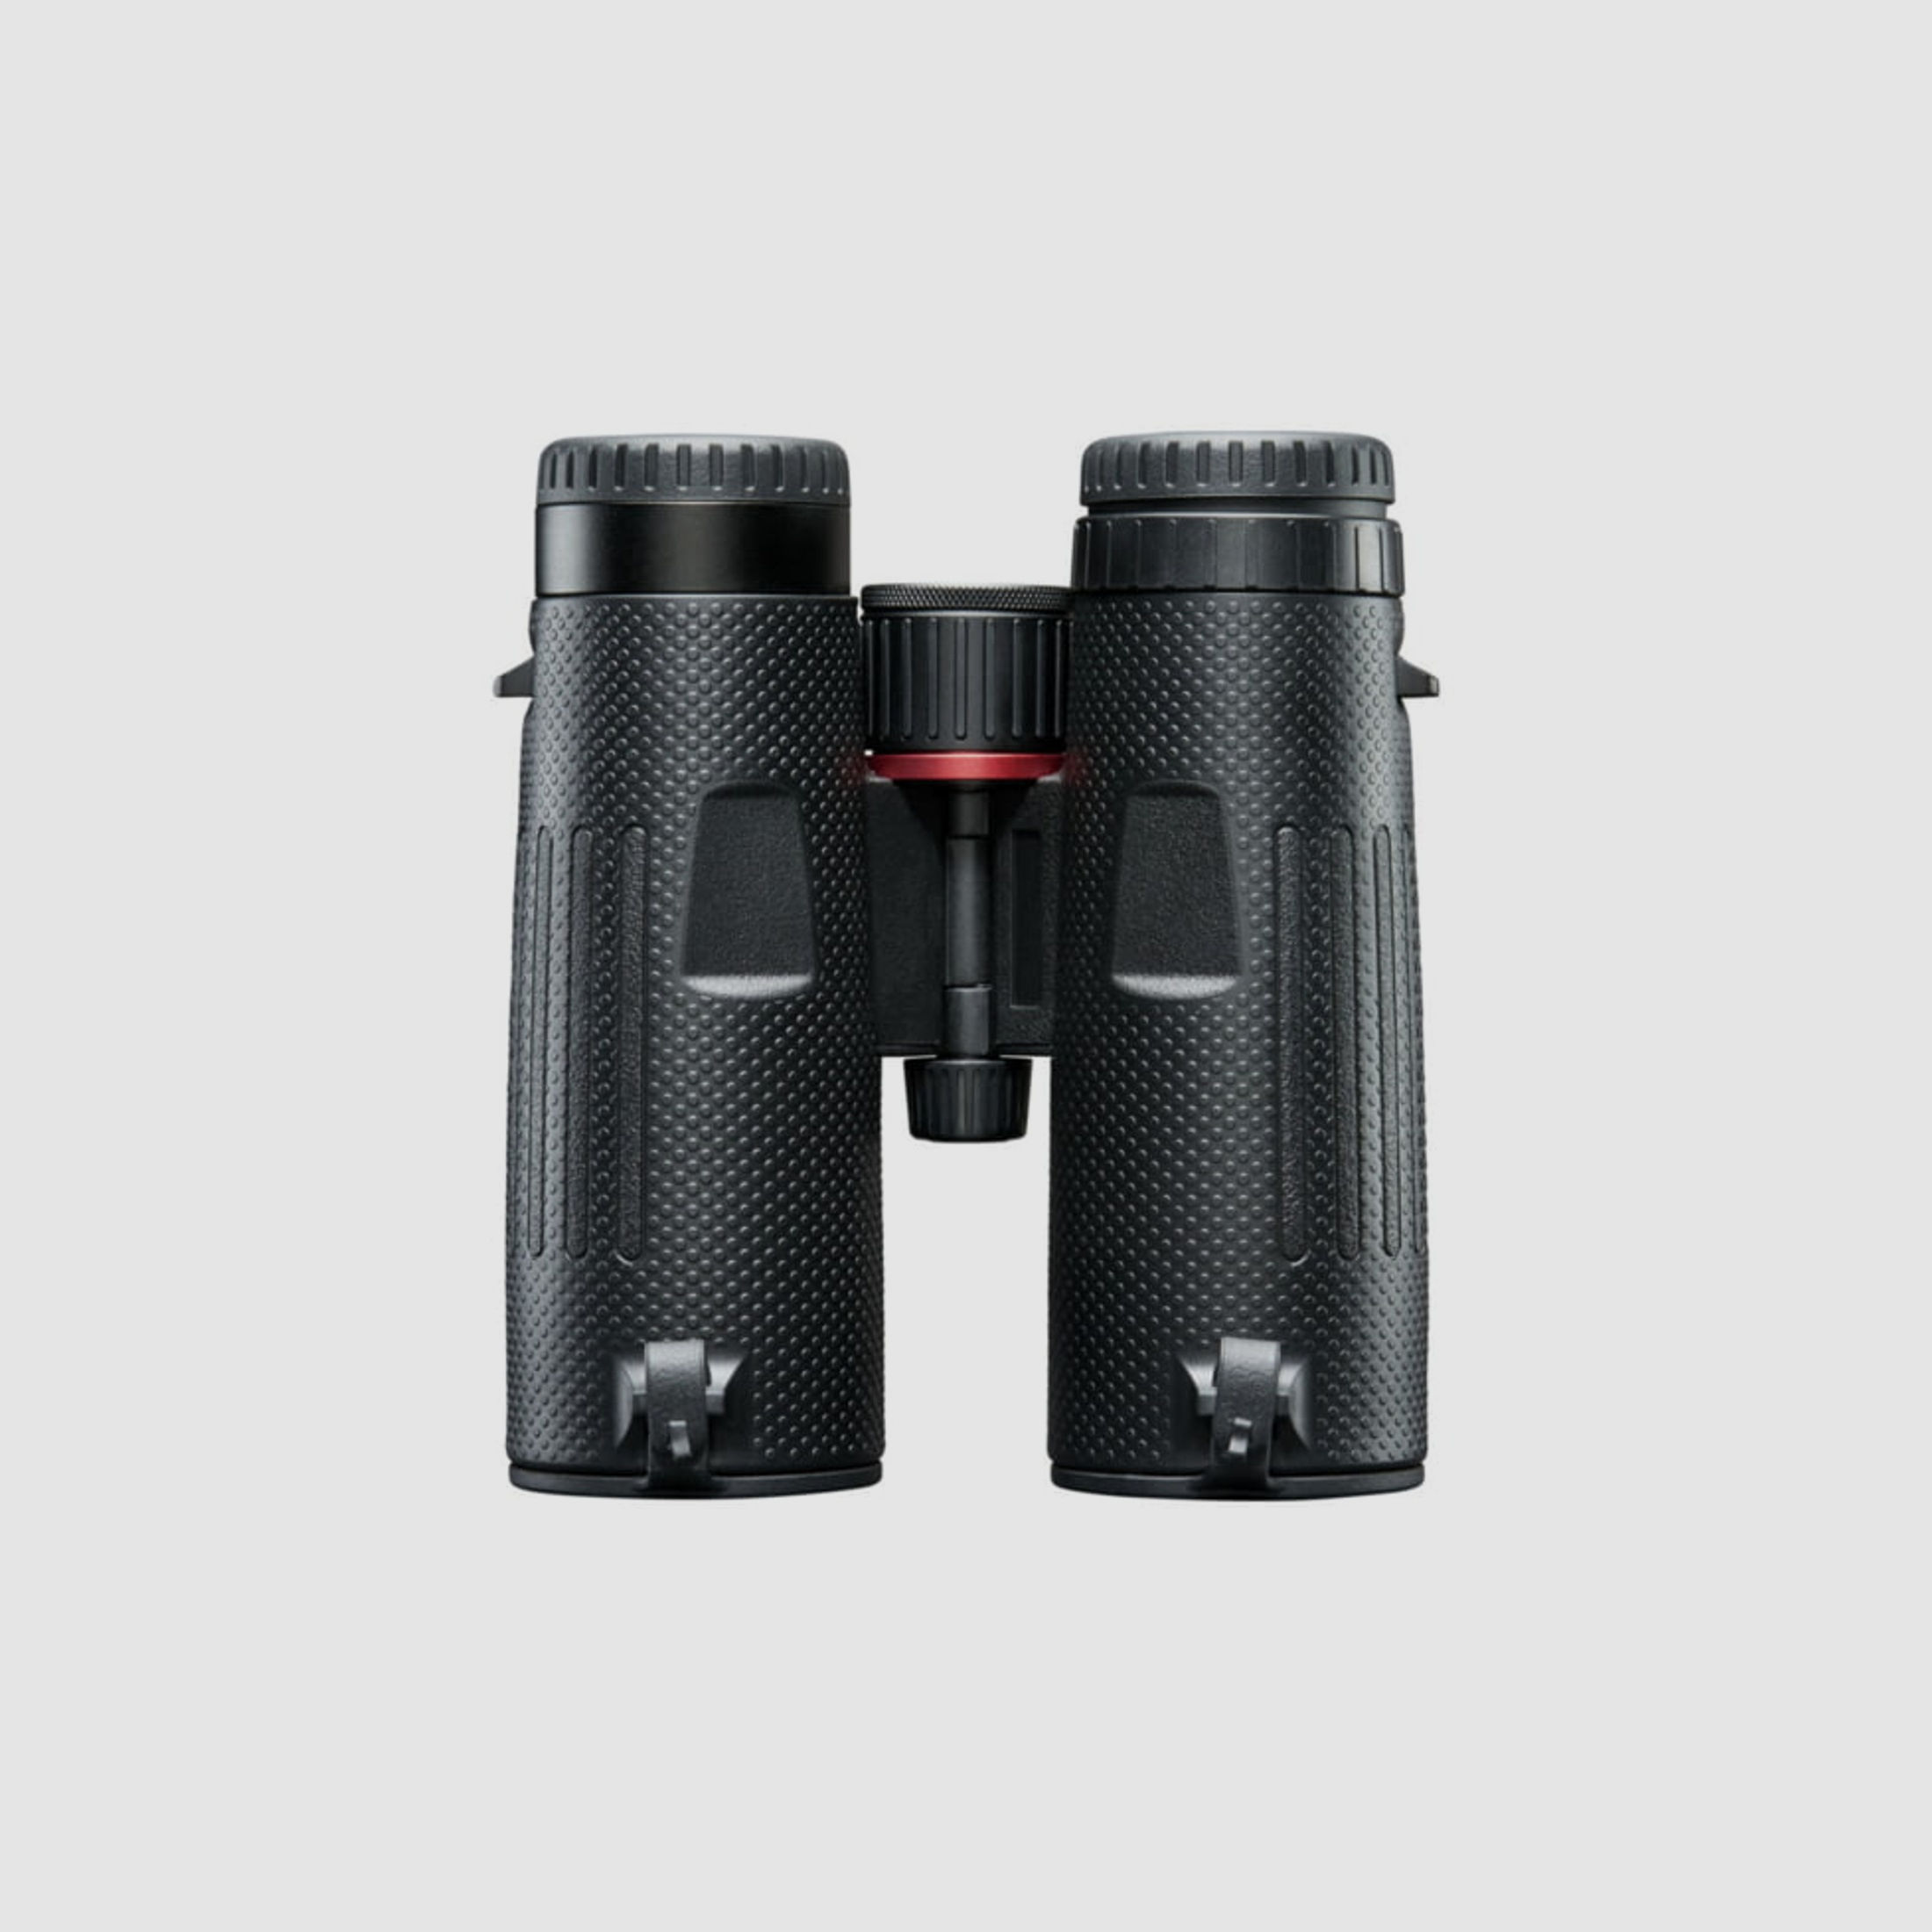 Bushnell Fernglas Nitro 10x42mm, schwarz, FMC, UWD, EXO Barrier